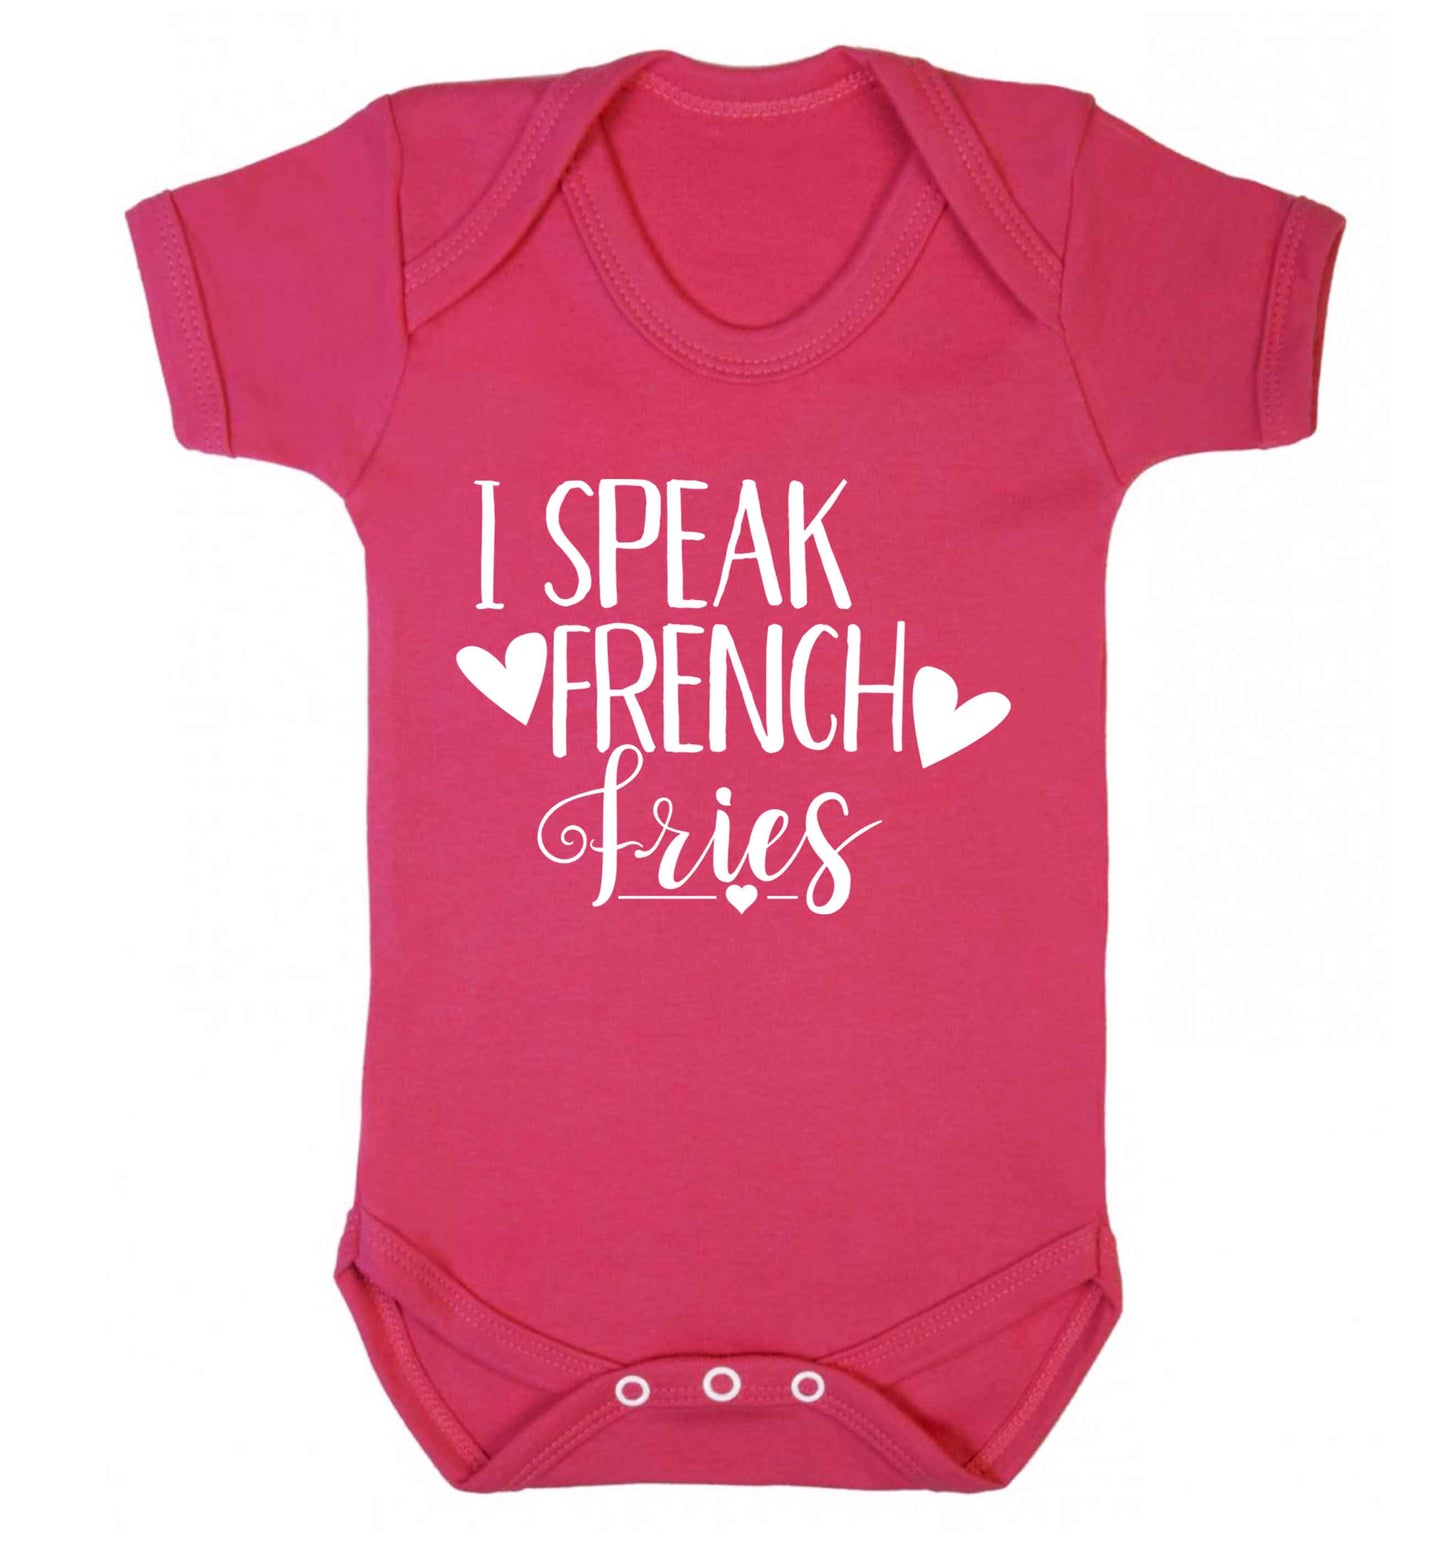 I speak French fries Baby Vest dark pink 18-24 months